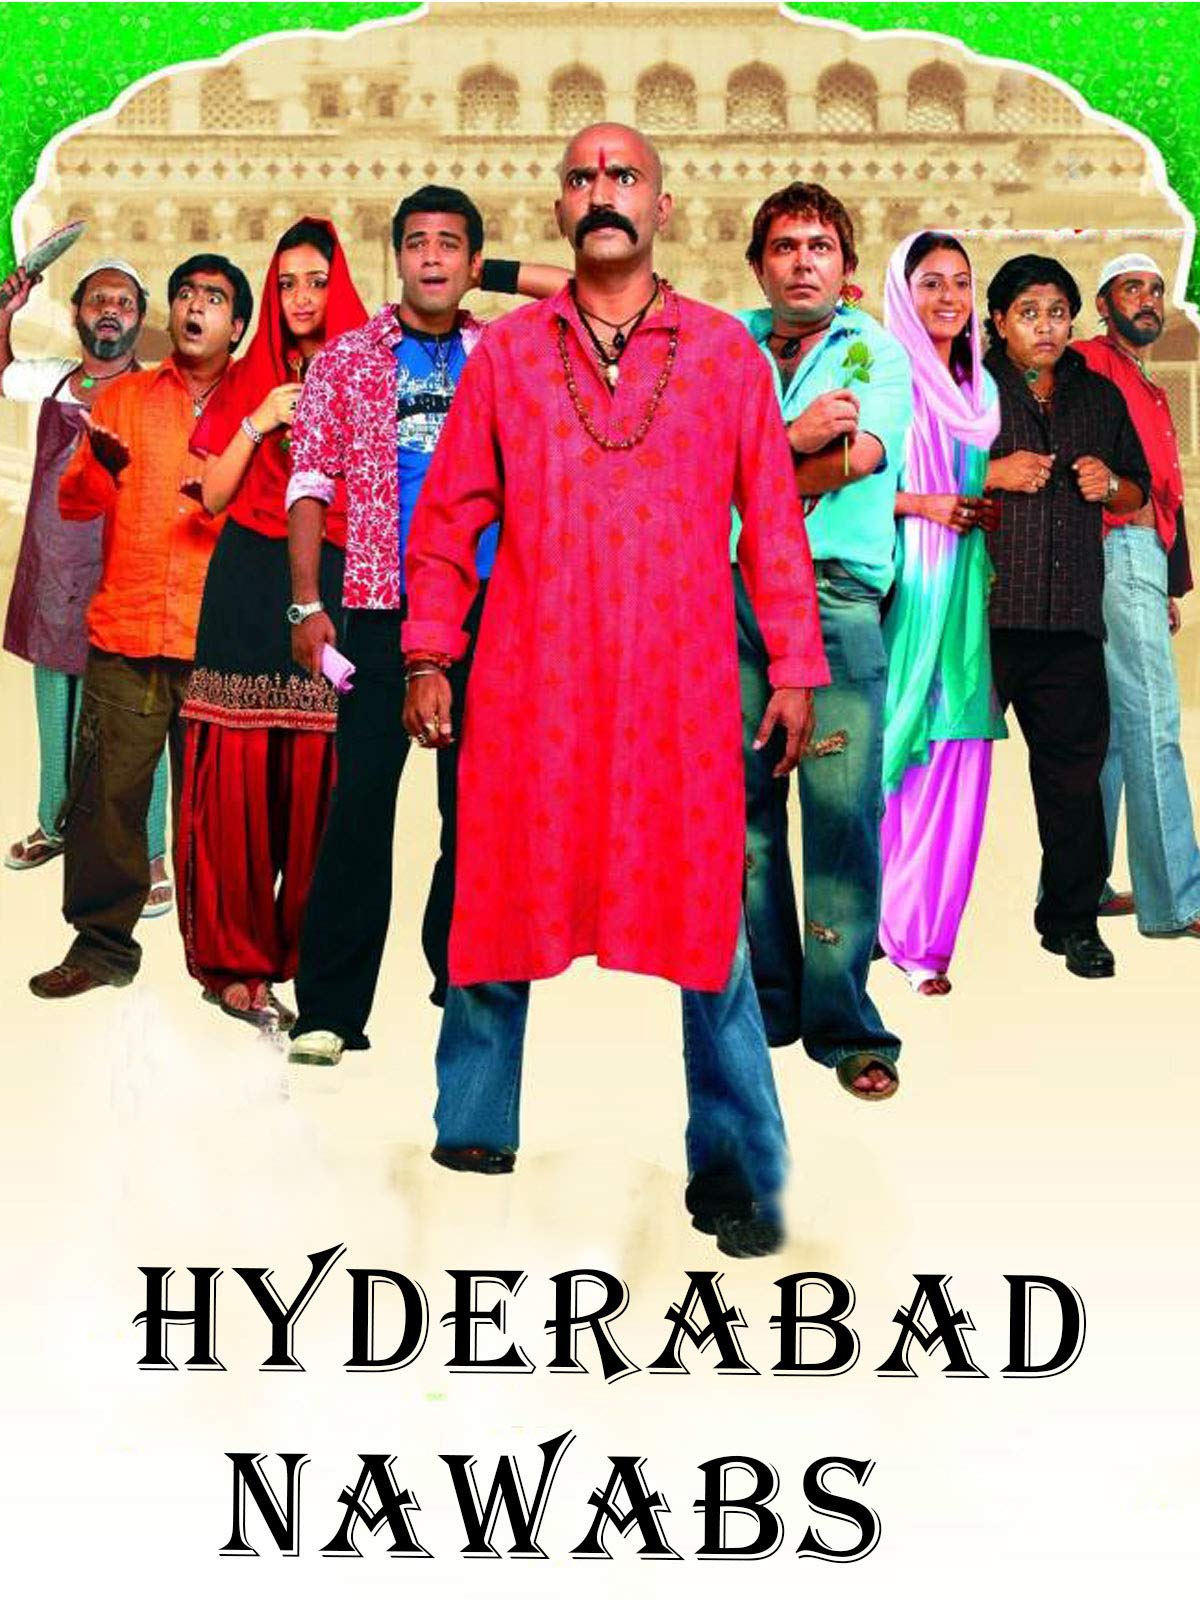 Hyderabad Nawabs 2006 4396 Poster.jpg